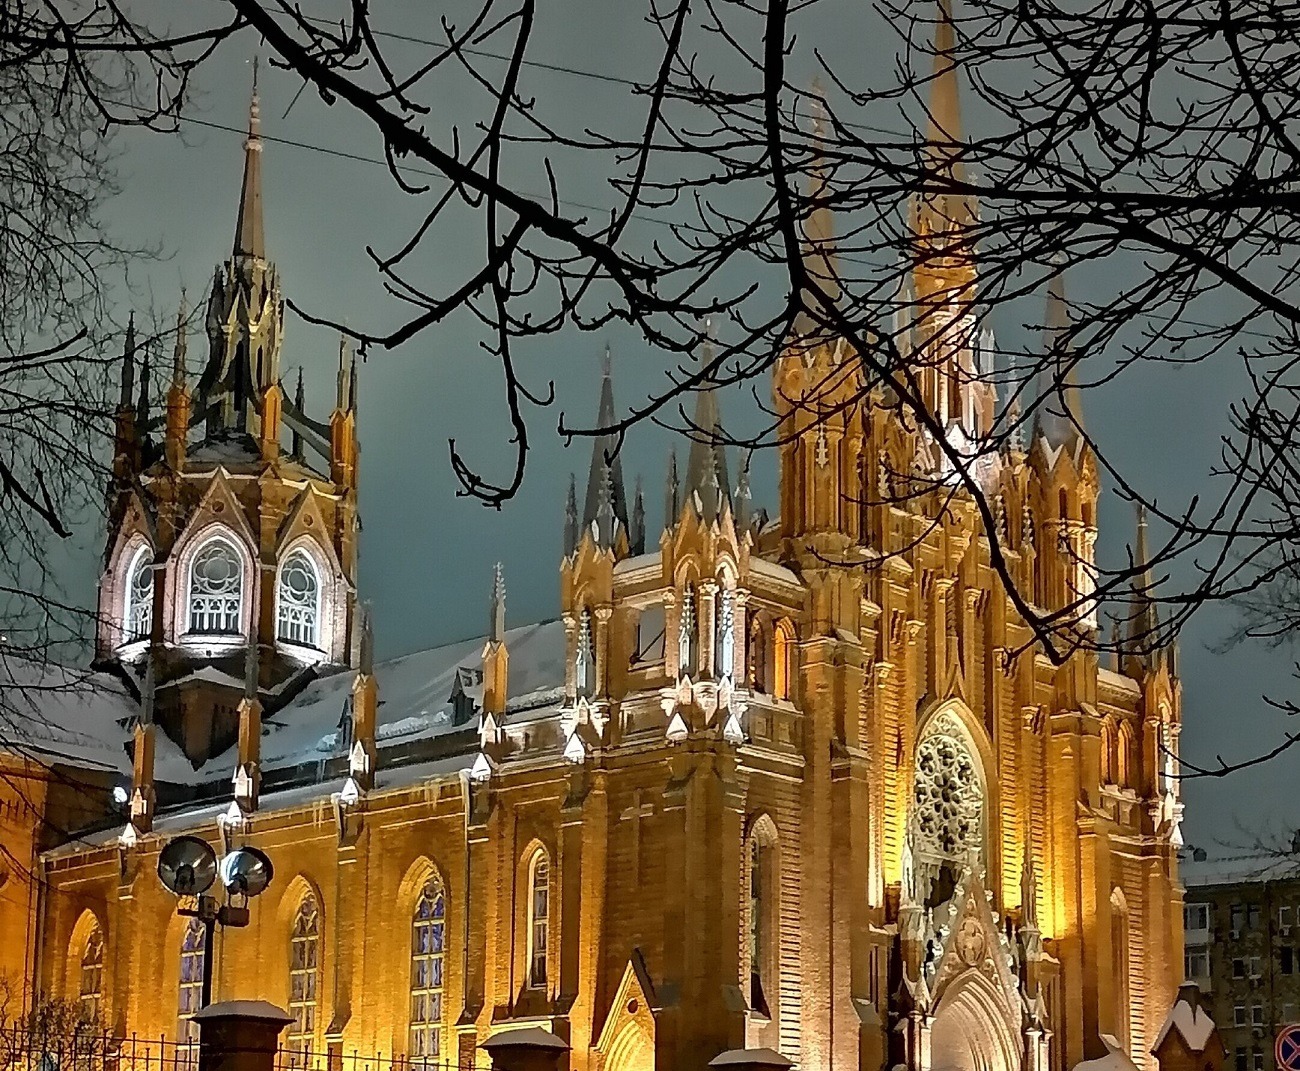 Сходить в Москве, чтобы увидеть это чудо необходимо: Кафедральный собор Непорочного Зачатия Пресвятой Девы Марии — самая крупная католическая церковь России